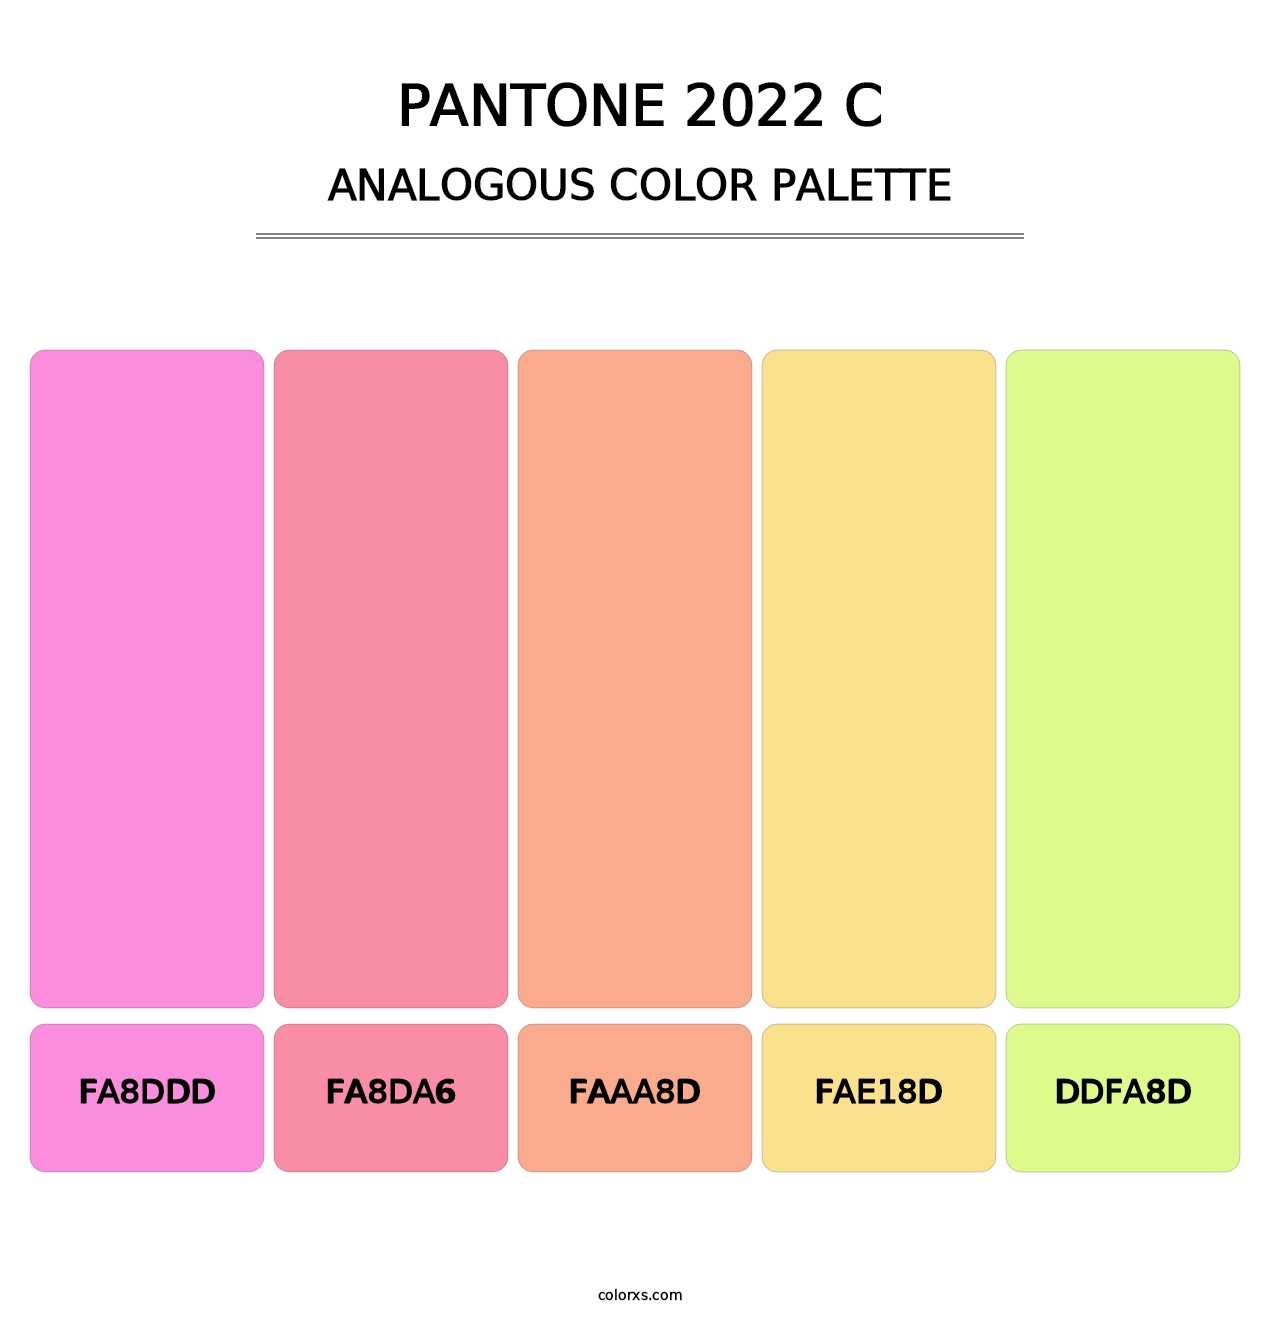 PANTONE 2022 C - Analogous Color Palette